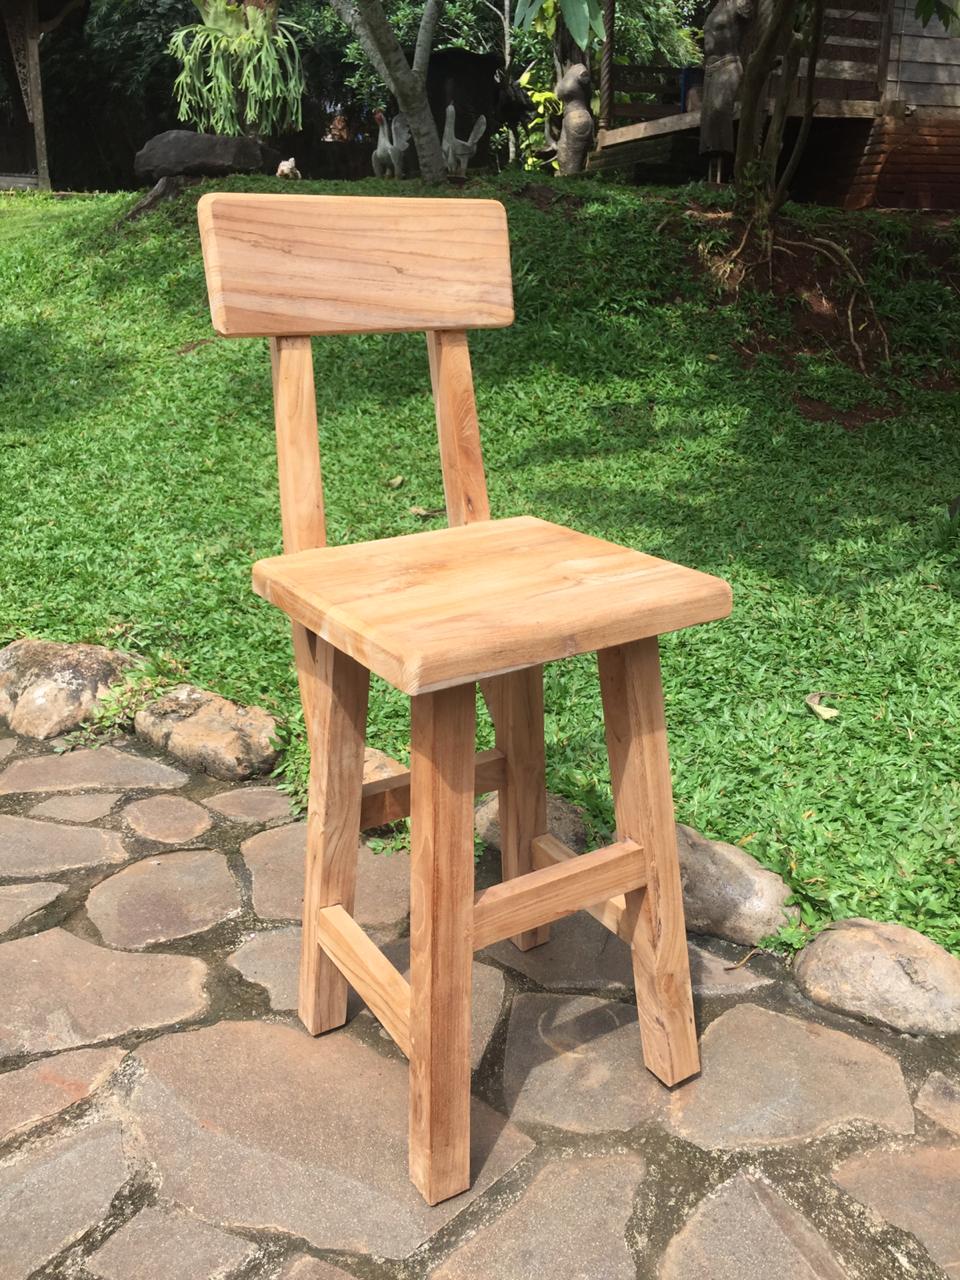 כיסא בר עם גב עץ טיק במחיר מבצע: 990 ש"ח